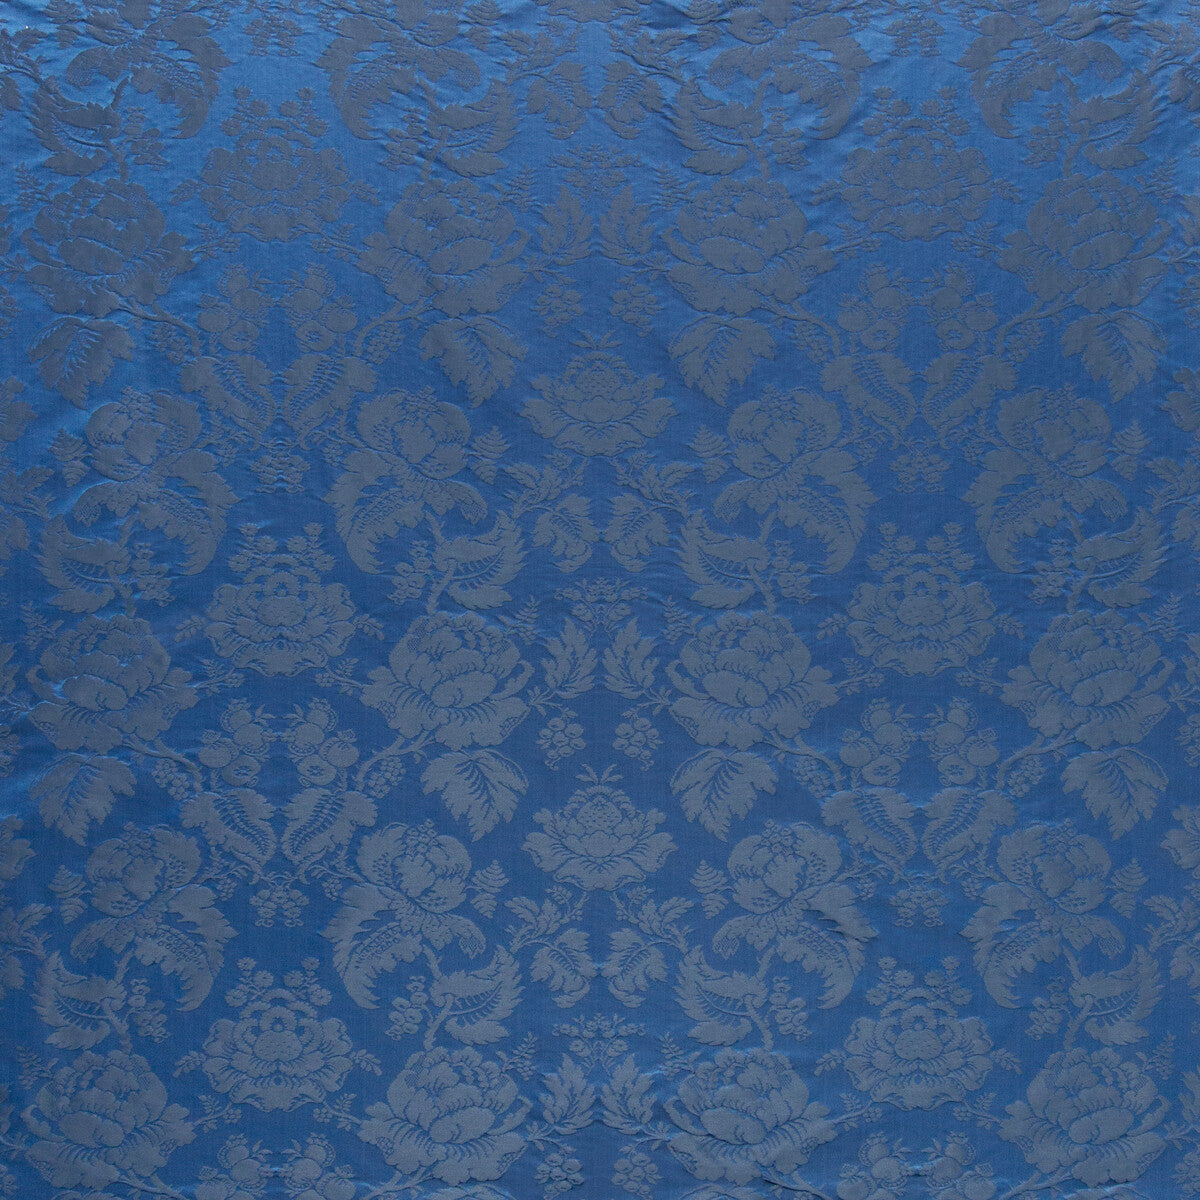 Moulins Damask fabric in ocean color - pattern BR-81035.55.0 - by Brunschwig &amp; Fils